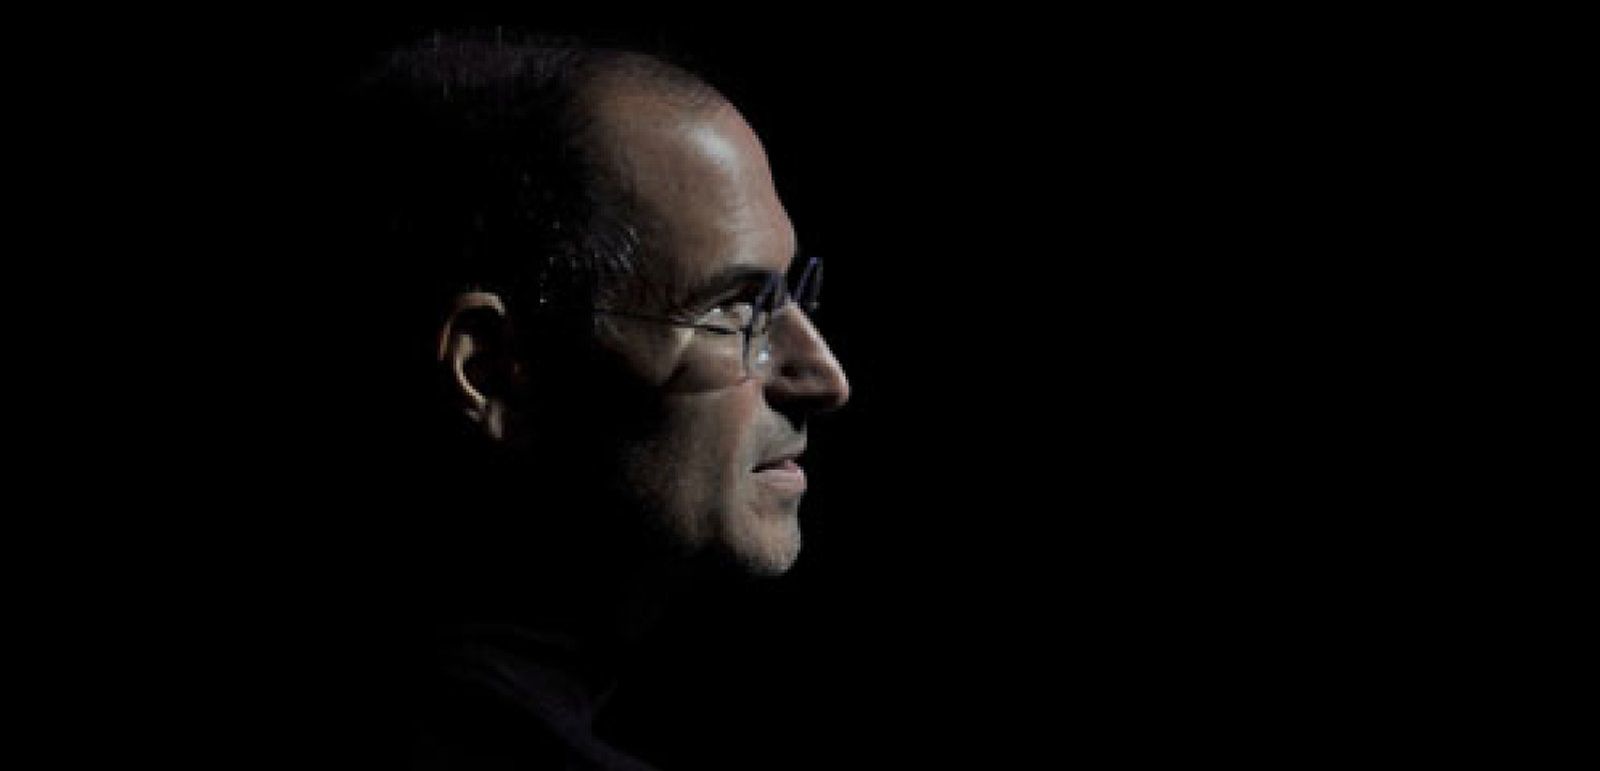 Foto: Diez detalles que no conocía sobre Steve Jobs